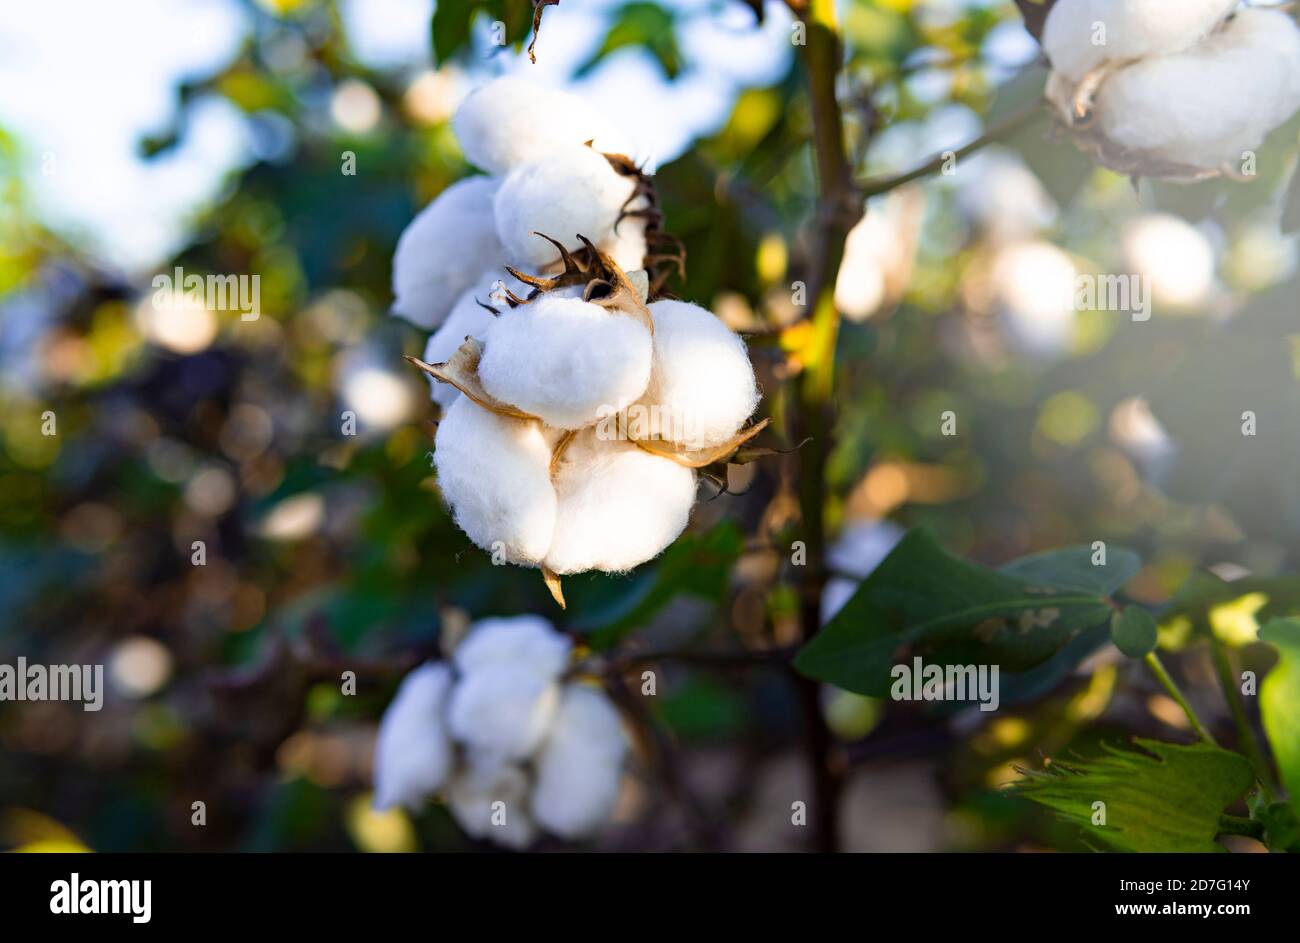 Baumwolle hergestellt in den USA gewachsen Natural Soft White Stockfoto